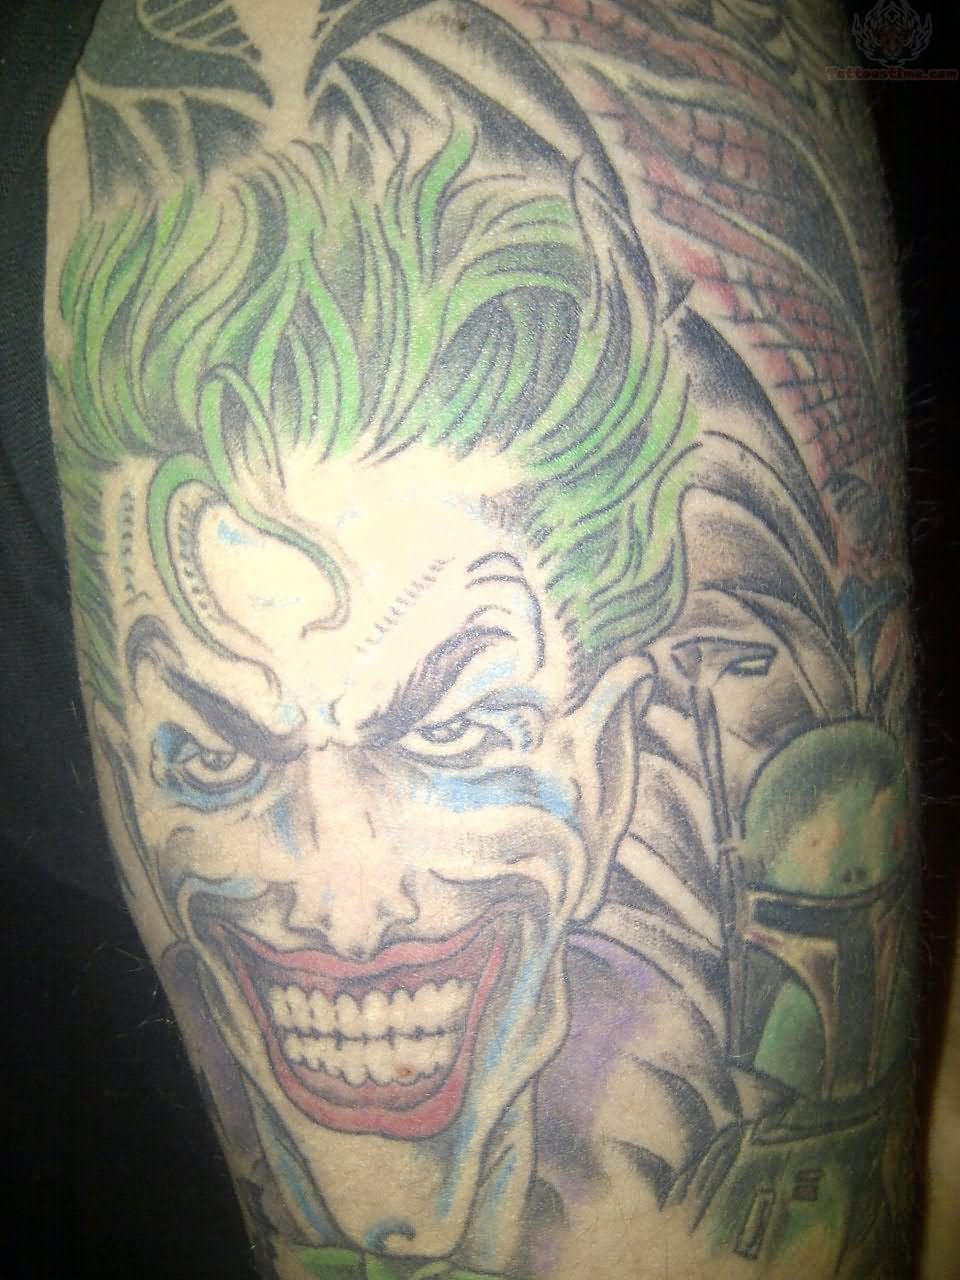 color-joker-tattoo-on-half-sleeve